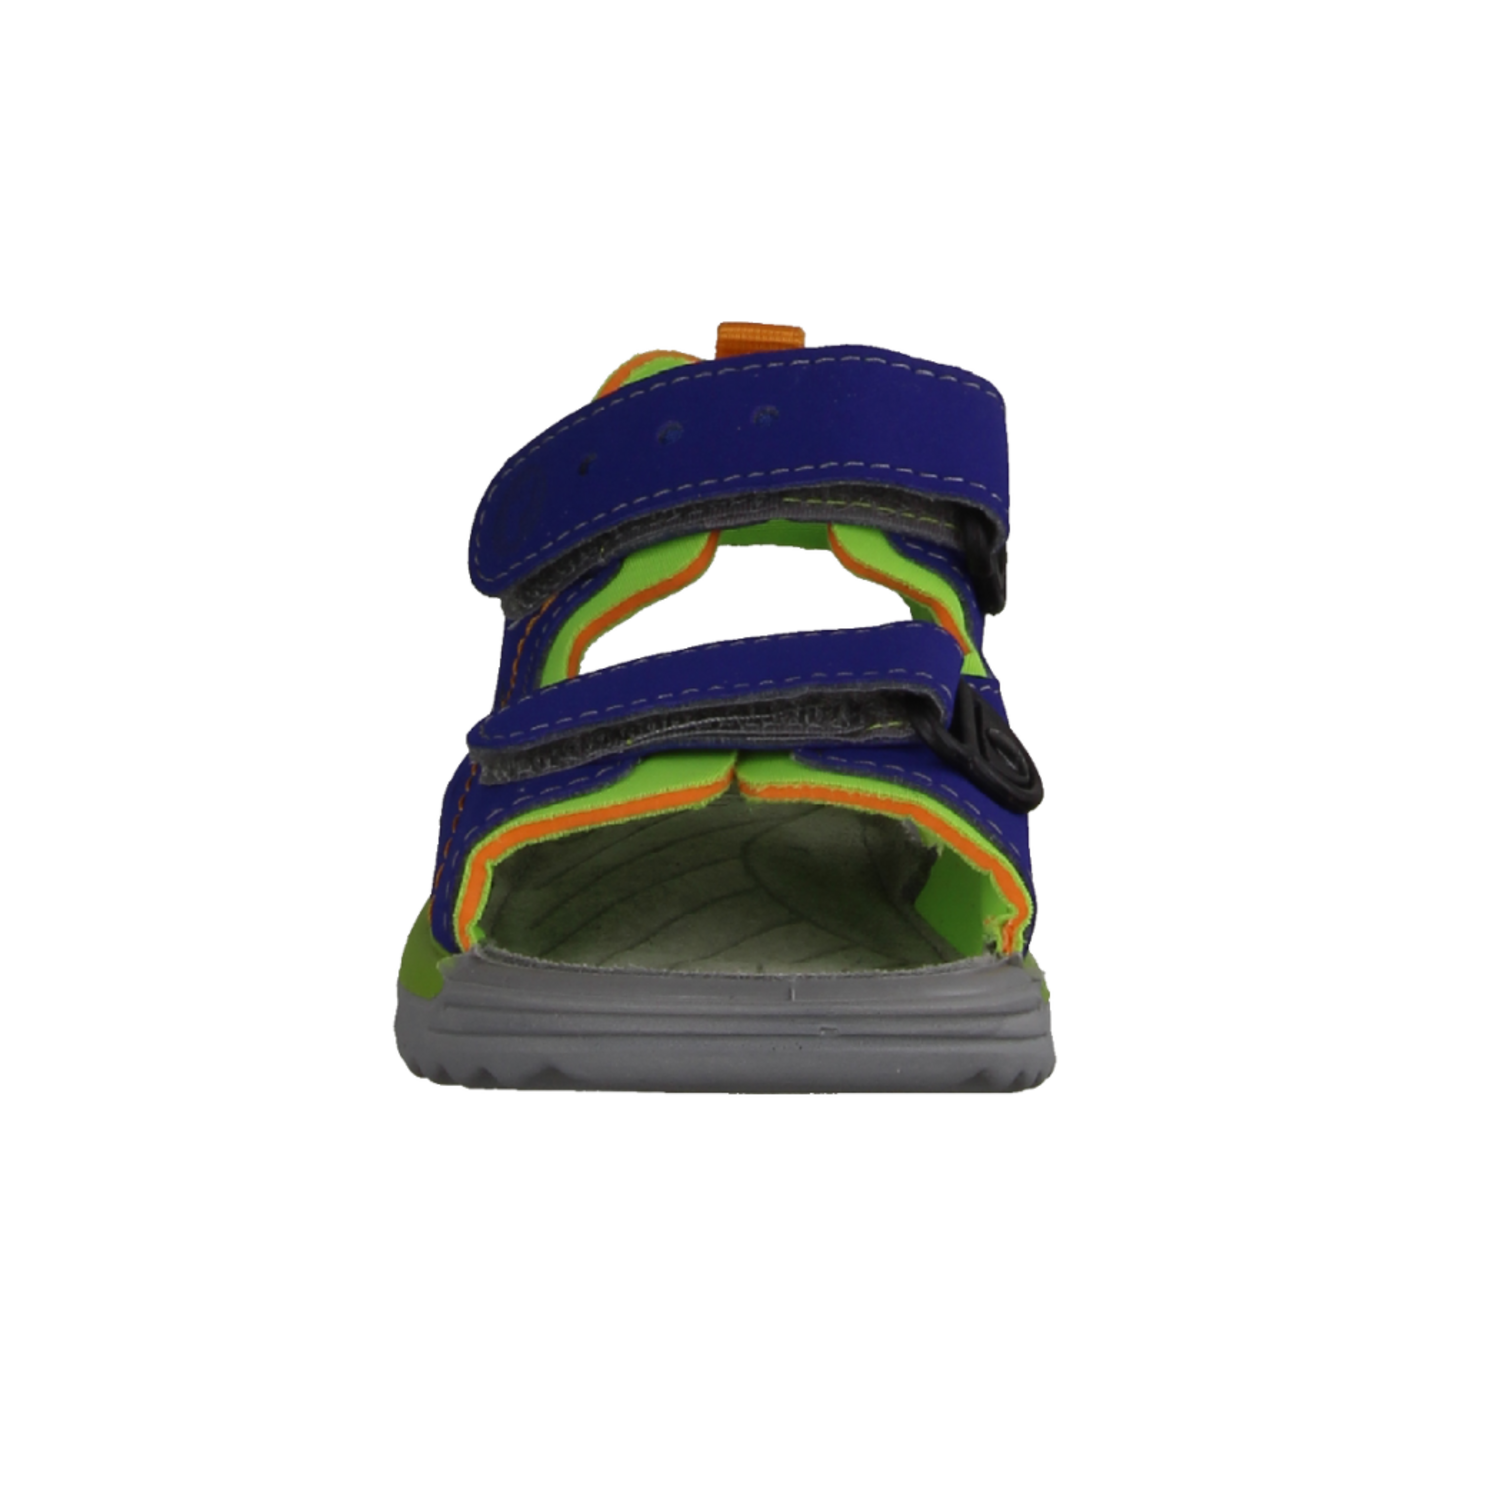 Ricosta Surf 4500102160 Klettriemen Sandale für Kobalt/Apple Jungs, mit